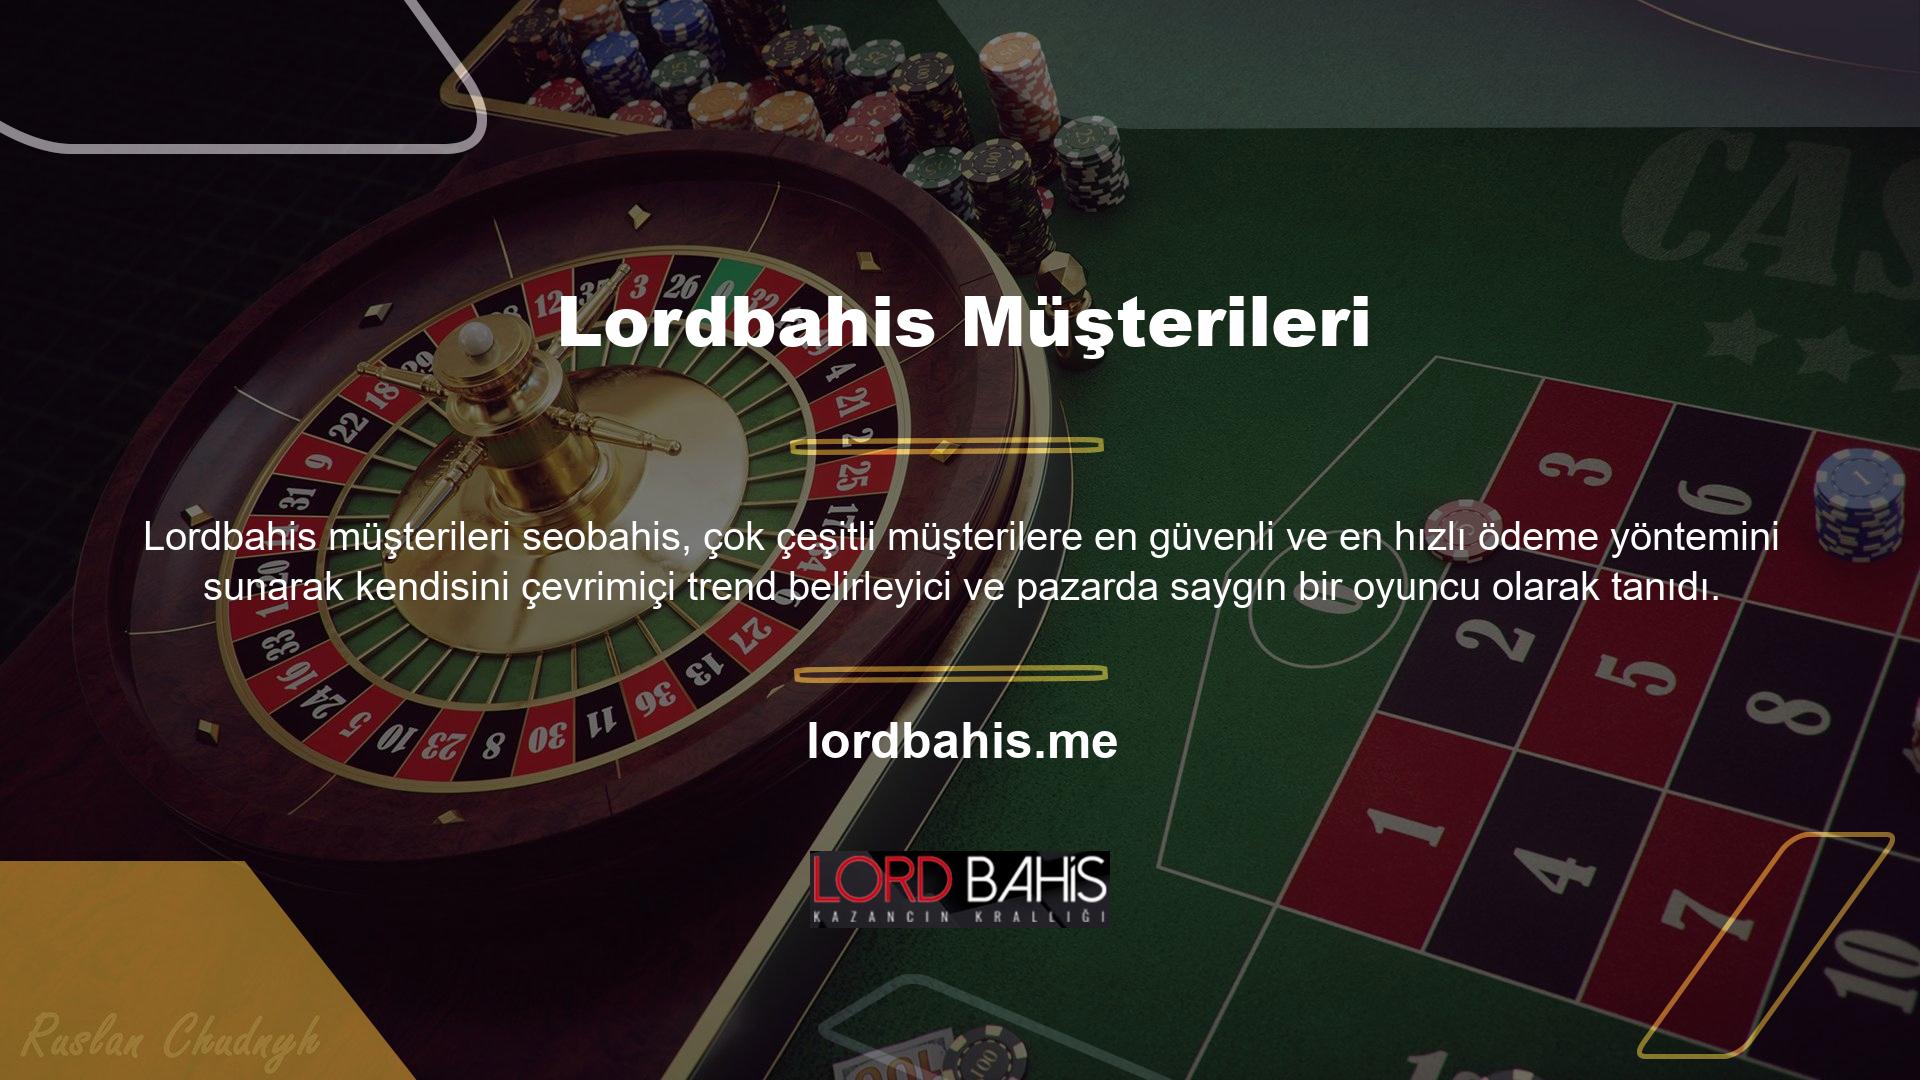 Çevrimiçi casino siteleri, hiçbir şikayet bildirilmeden mükemmel müşteri hizmeti sağlama konusunda Lordbahis güveniyor